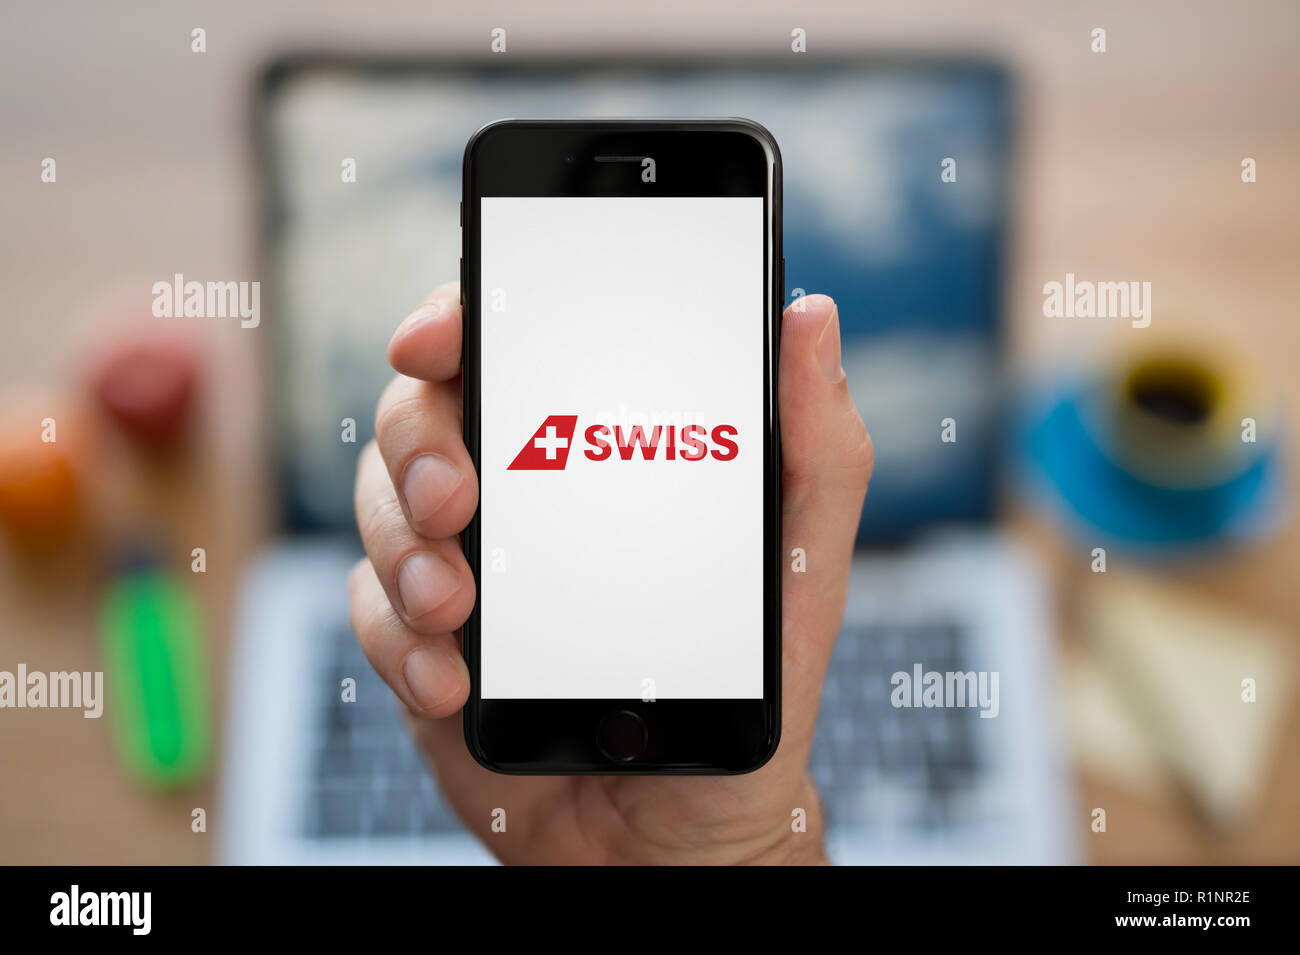 Ein Mann schaut auf seinem iPhone die zeigt die Swiss International Air Lines logo, während saß an seinem Computer Schreibtisch (nur redaktionelle Nutzung). Stockfoto